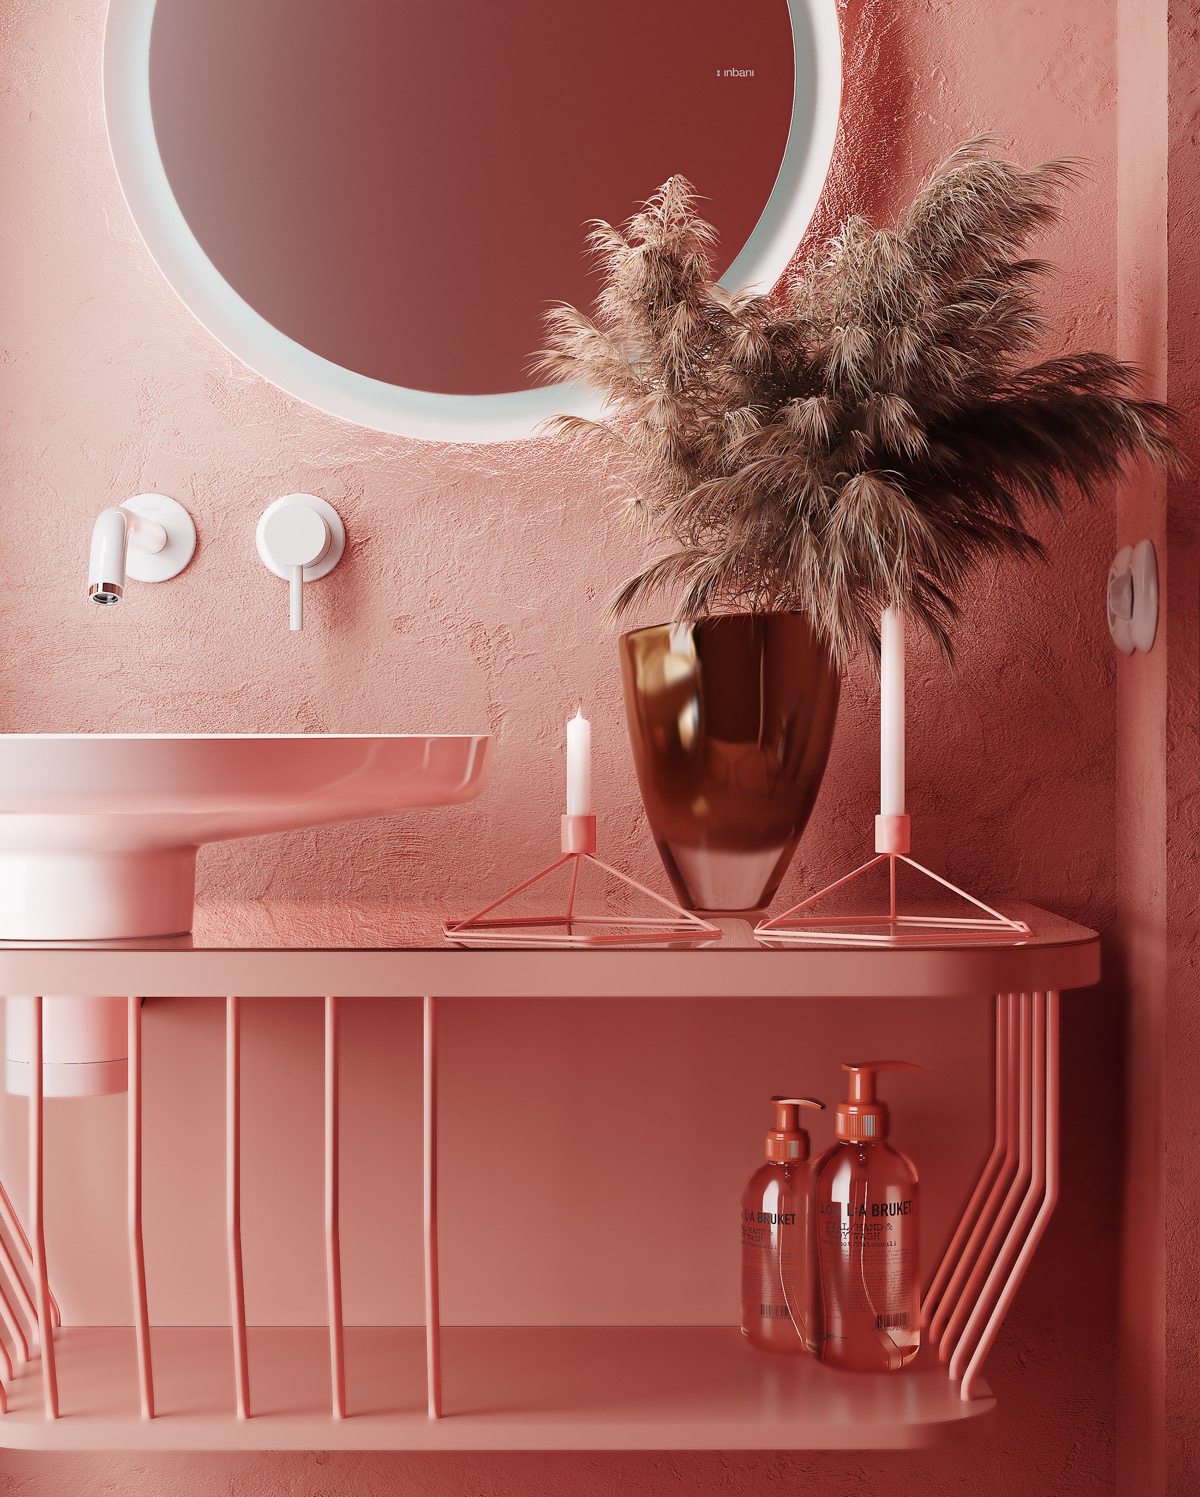 Chủ nhân phòng tắm này yêu thích màu hồng đến nỗi đầu tư cả bộ sản phẩm chăm sóc cơ thể cũng theo tông màu này. Kệ nâng đỡ bồn rửa có thiết kế đẹp mắt với những chấn song sơn hồng là nơi để lưu trữ dầu gội, sữa tắm như một khu vực trưng bày.